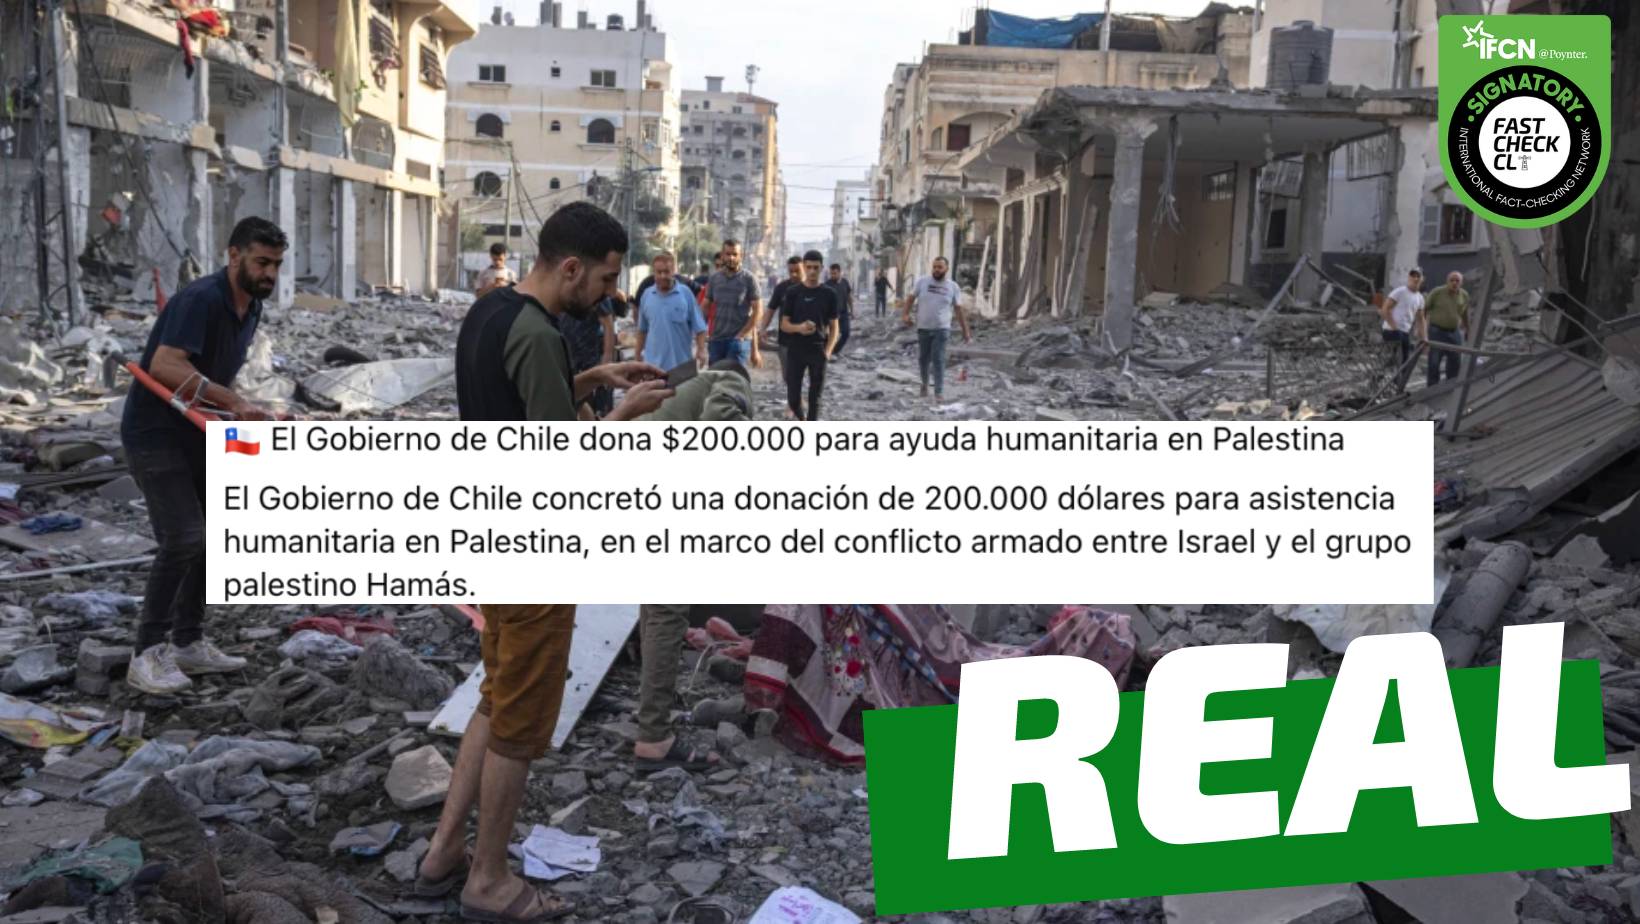 You are currently viewing “El Gobierno de Chile dona $200.000 d贸lares para ayuda humanitaria en Palestina”: #Real